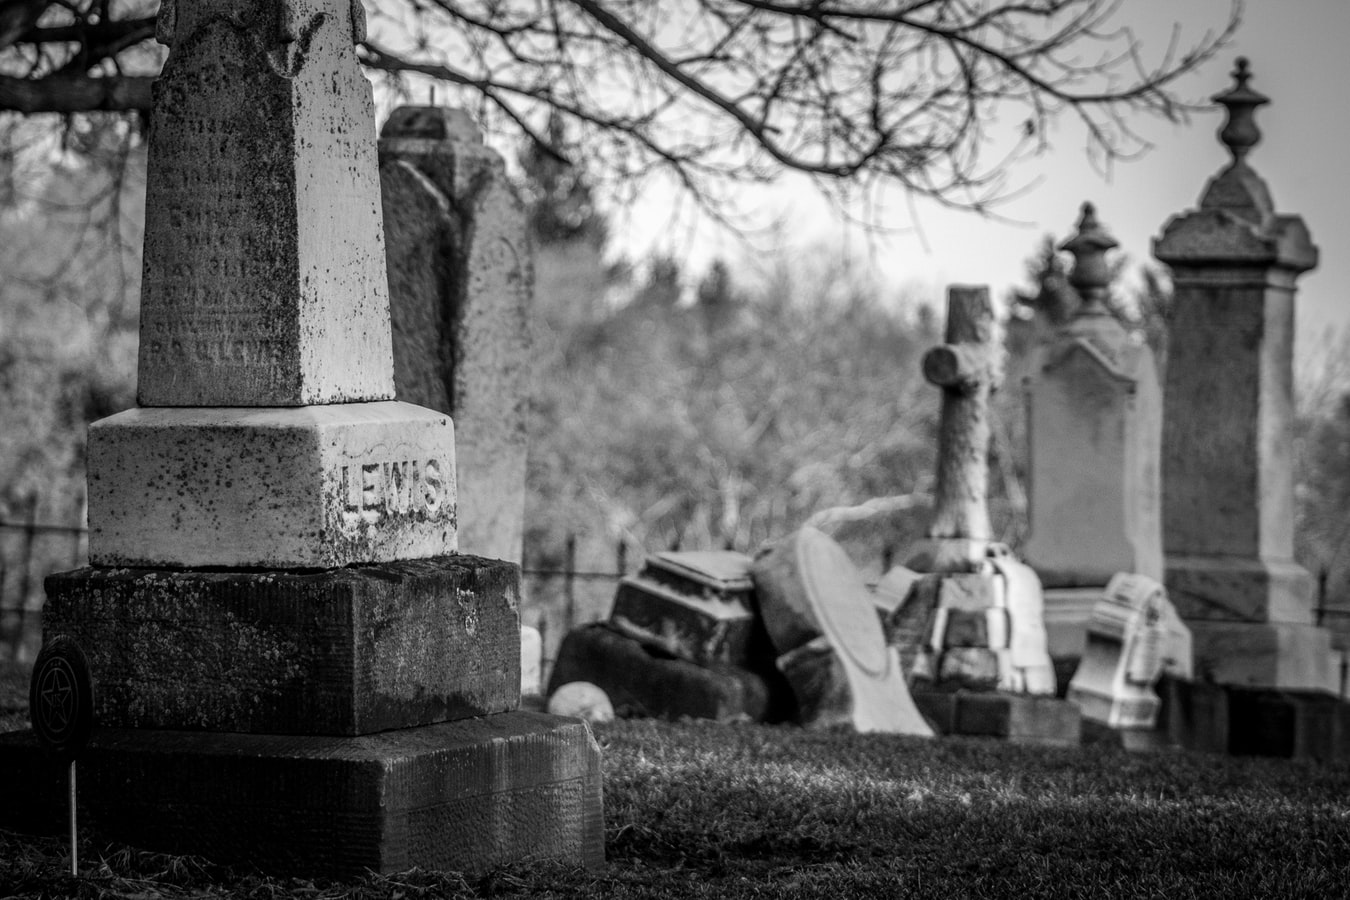  Repense BandNews: os cemitérios como espaços de turismo